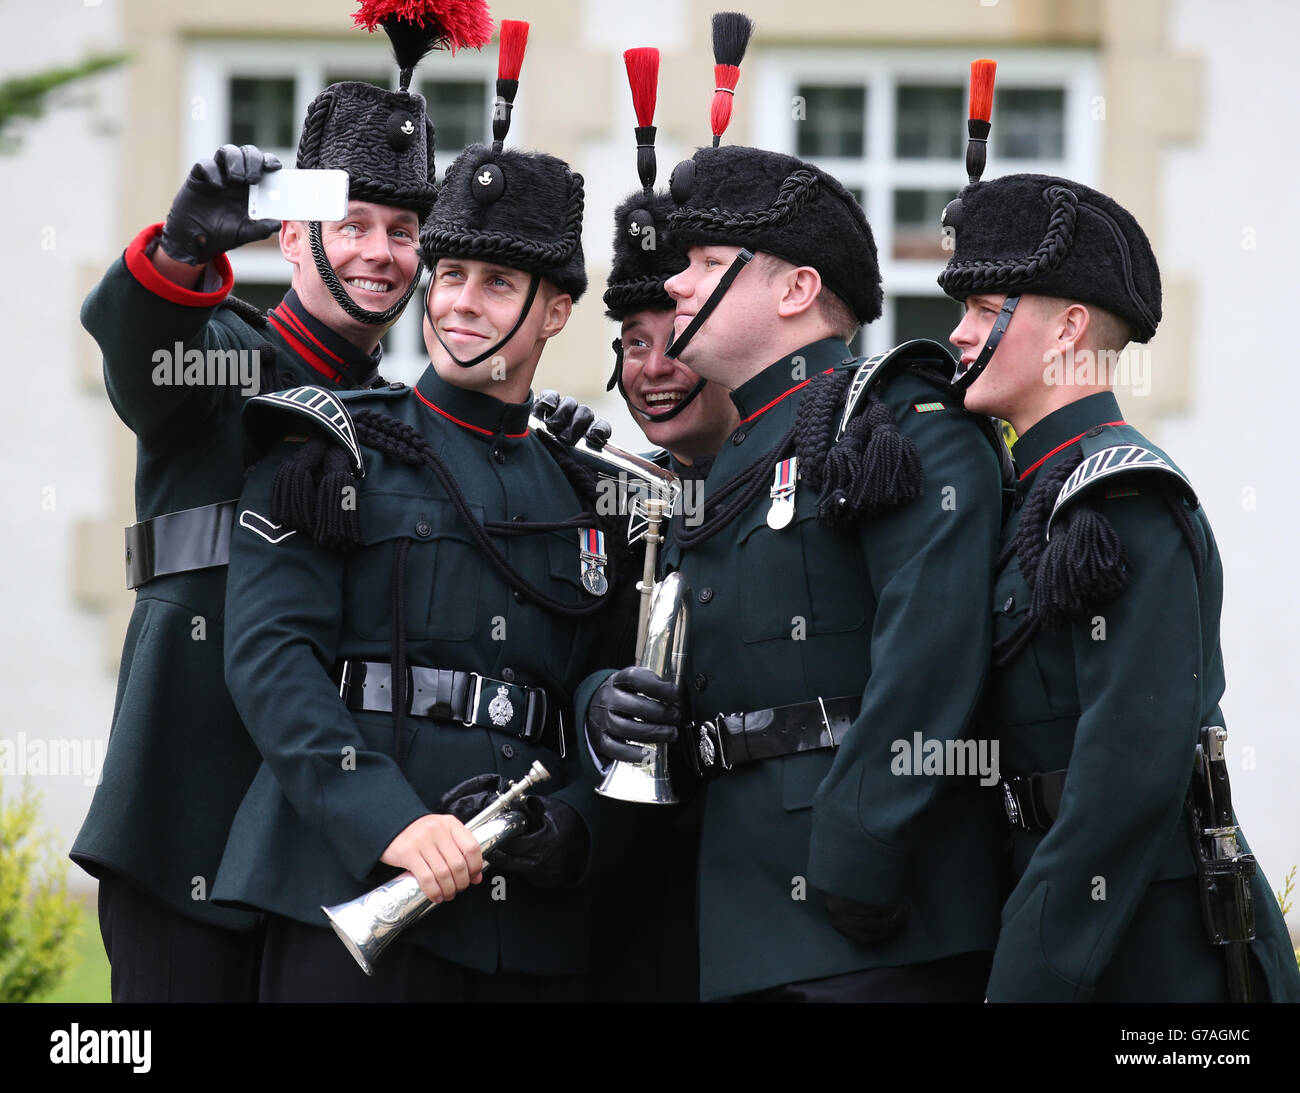 Buglers von 3 Gewehren haben ein Selfie gemacht während einer Übergabe Zeremonie in der Dreghorn Barracks in Edinburgh, wenn 3 Gewehre übernehmen die Barracks von 1 SCHOTTEN, die jetzt in Nordirland befinden. Stockfoto